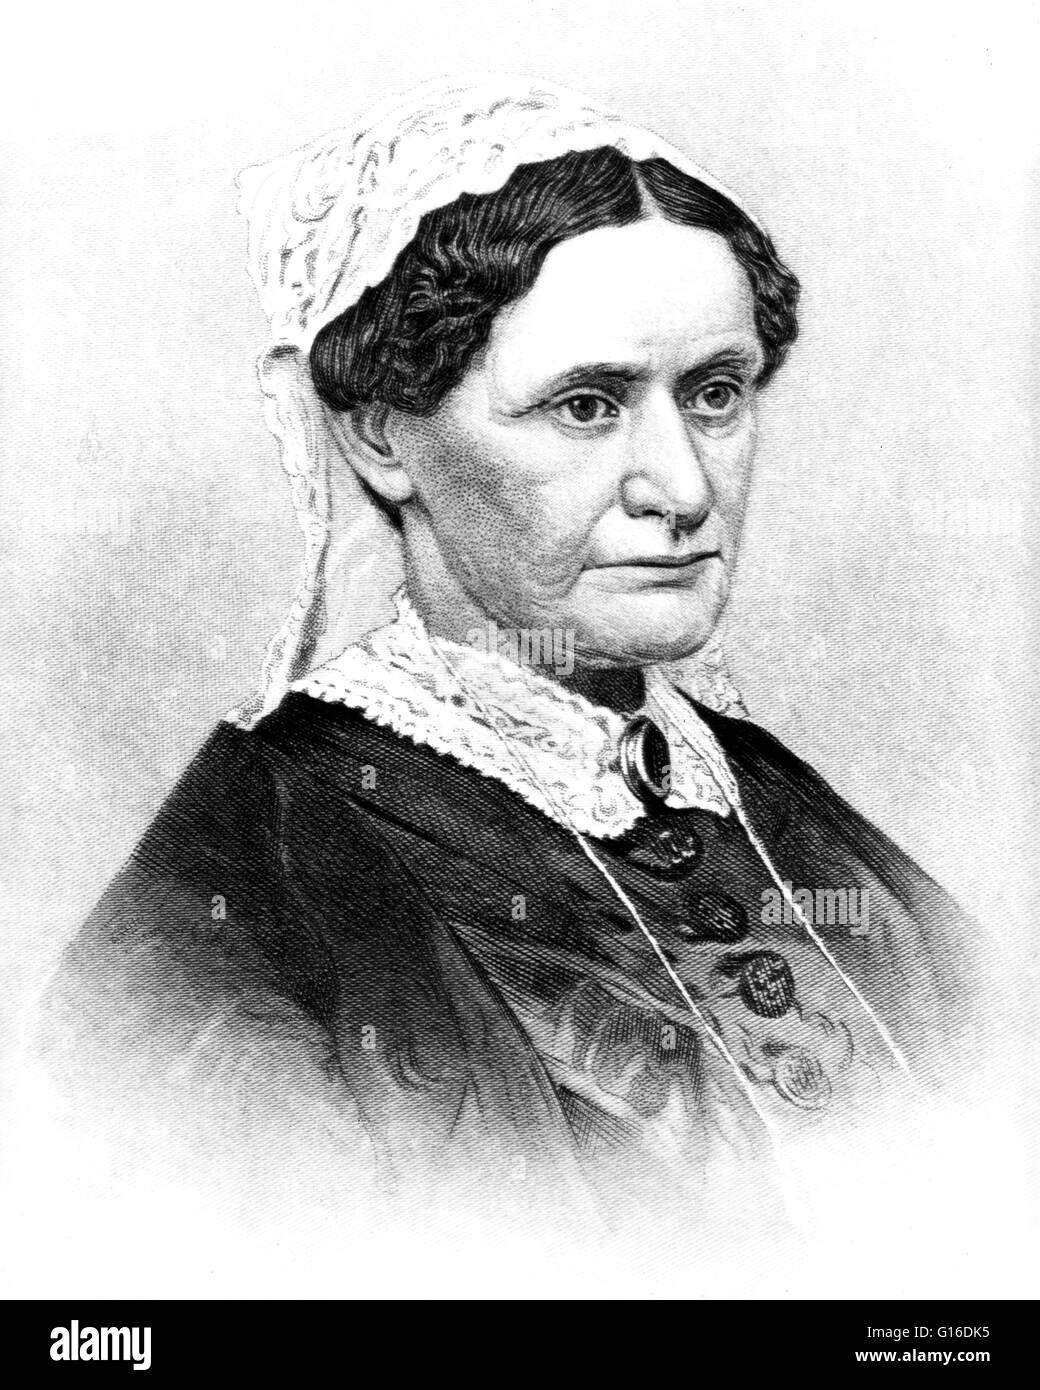 Mrs. Andrew Johnson gestochen von John Chester Buttre, 1883. Eliza McCardle Johnson (4. Oktober 1810 - 15. Januar 1876) wurde die First Lady der Vereinigten Staaten und die Frau von Andrew Johnson, der 17. Präsident der Vereinigten Staaten. In1826, war Eliza chatt Stockfoto